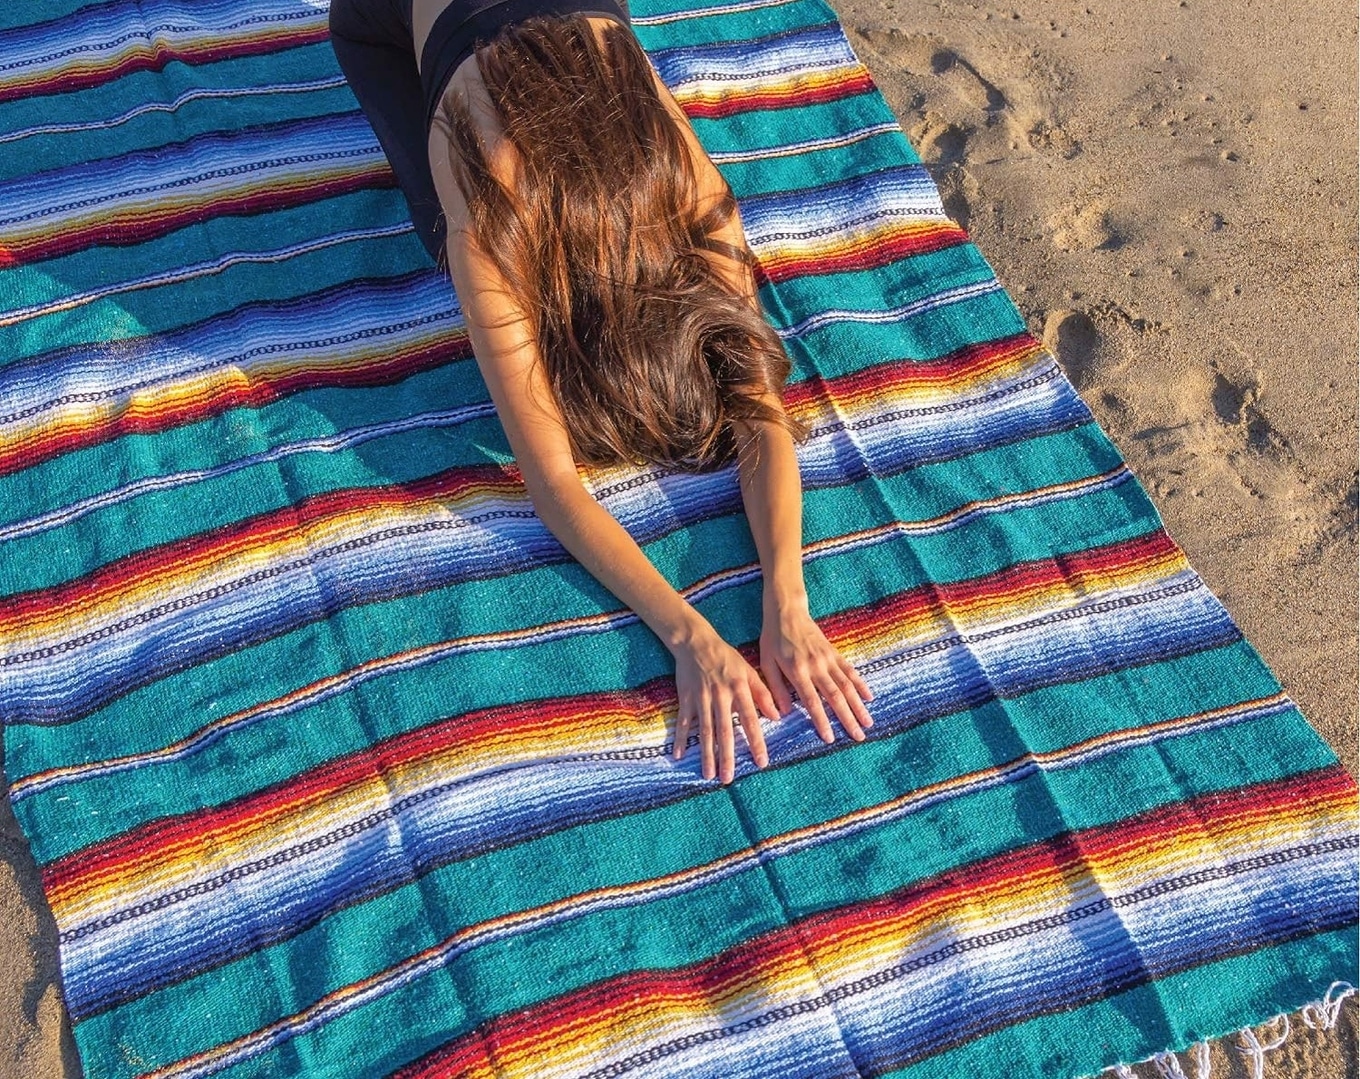 Yoga on Blanket